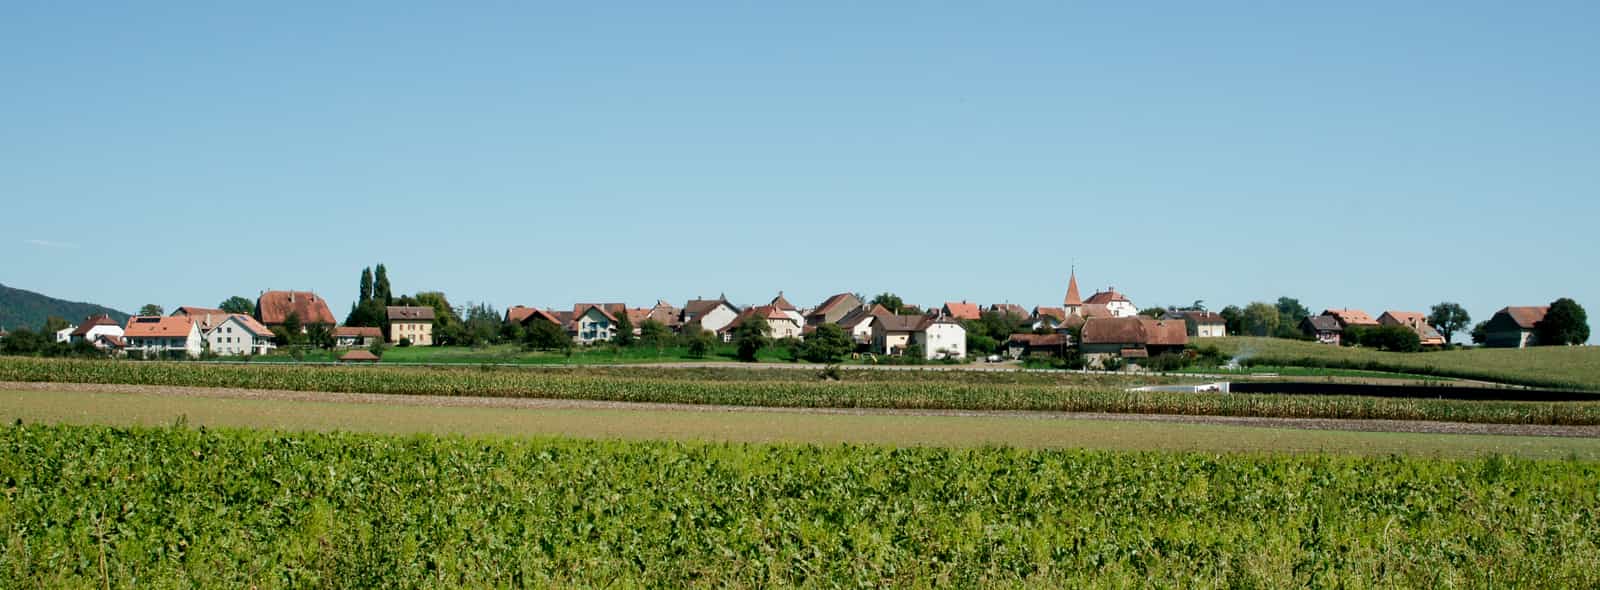 Veduta del villaggio di Onnens, cantone di Vaud, Svizzera